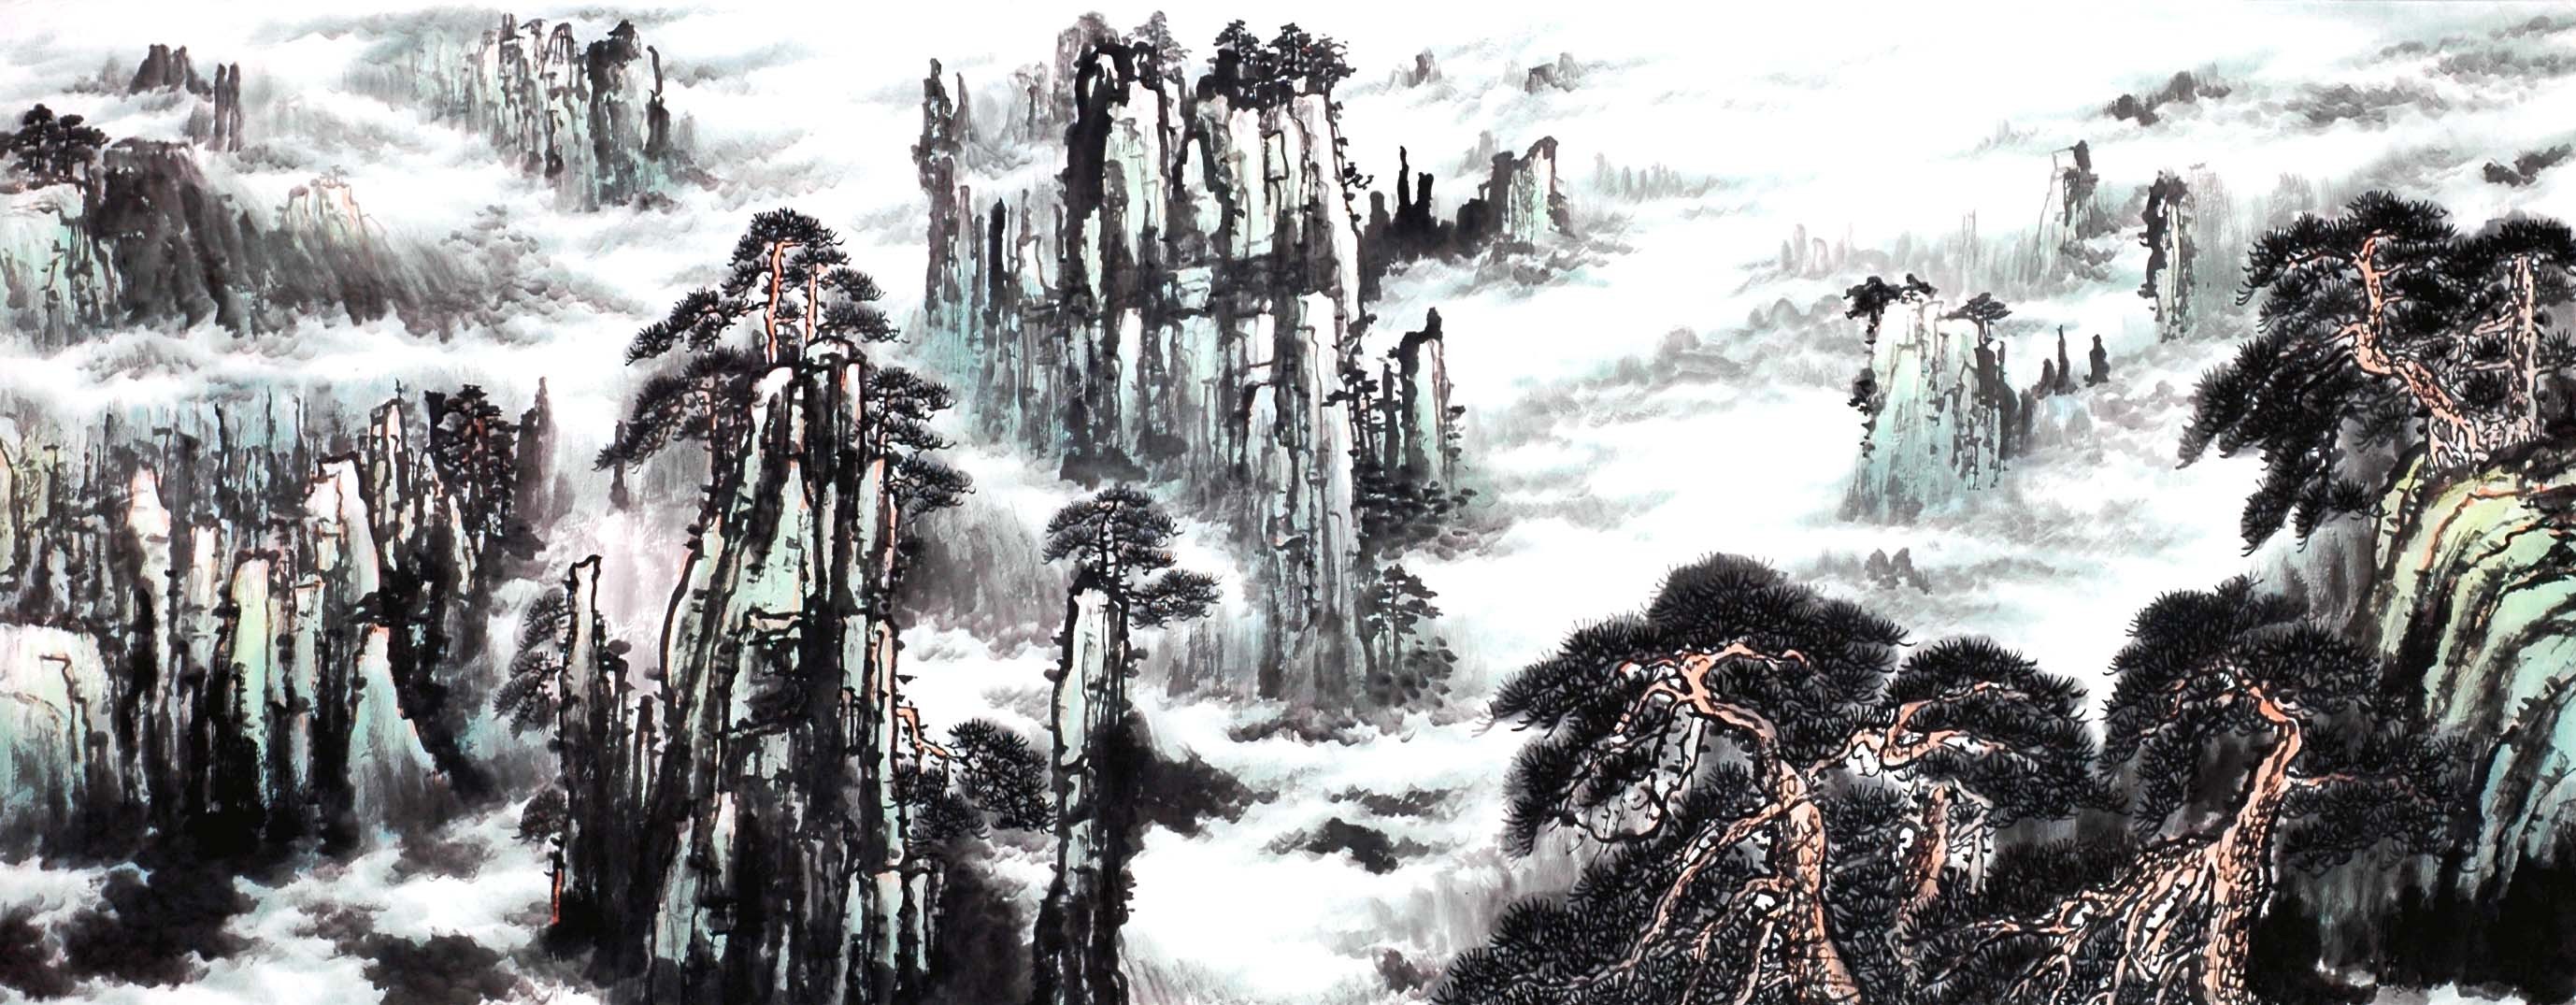 Chinese Landscape Painting - CNAG013846